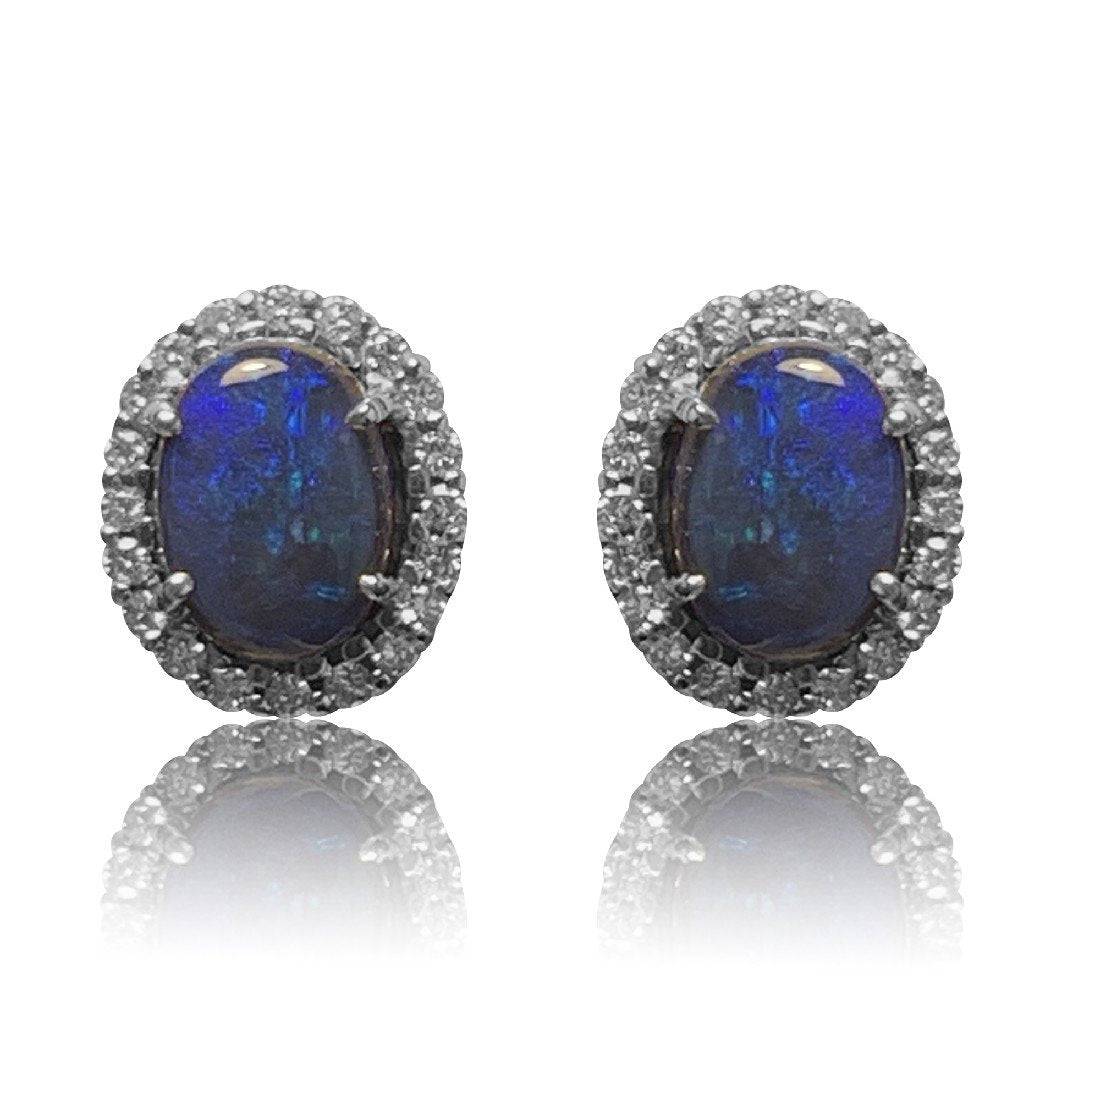 18kt White Gold Black Opal and diamond earrings - Masterpiece Jewellery Opal & Gems Sydney Australia | Online Shop